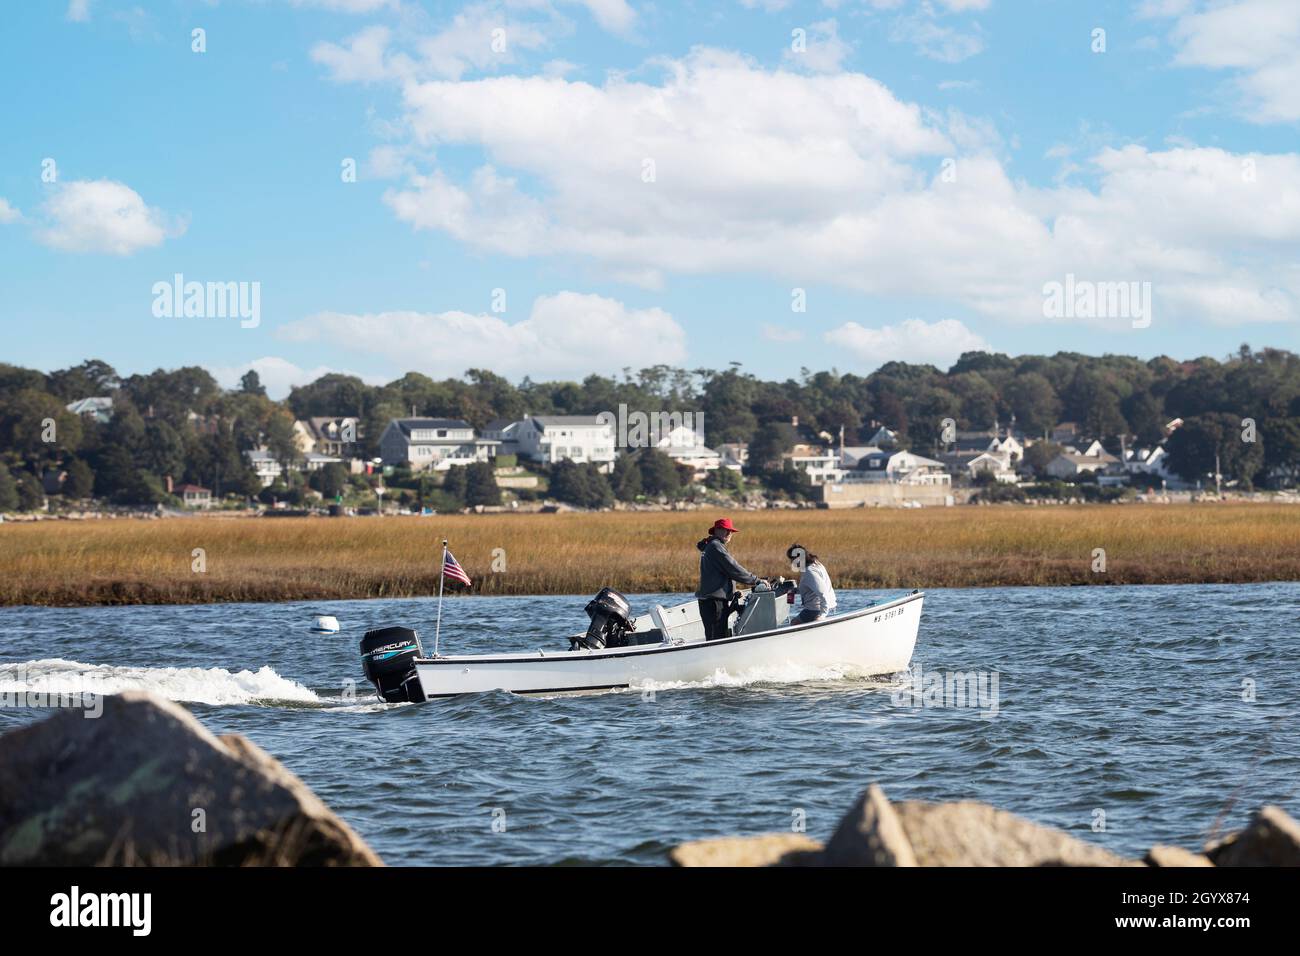 A motor boat passes through the James River Salt Marsh in Gloucester, Massachusetts, USA. Stock Photo